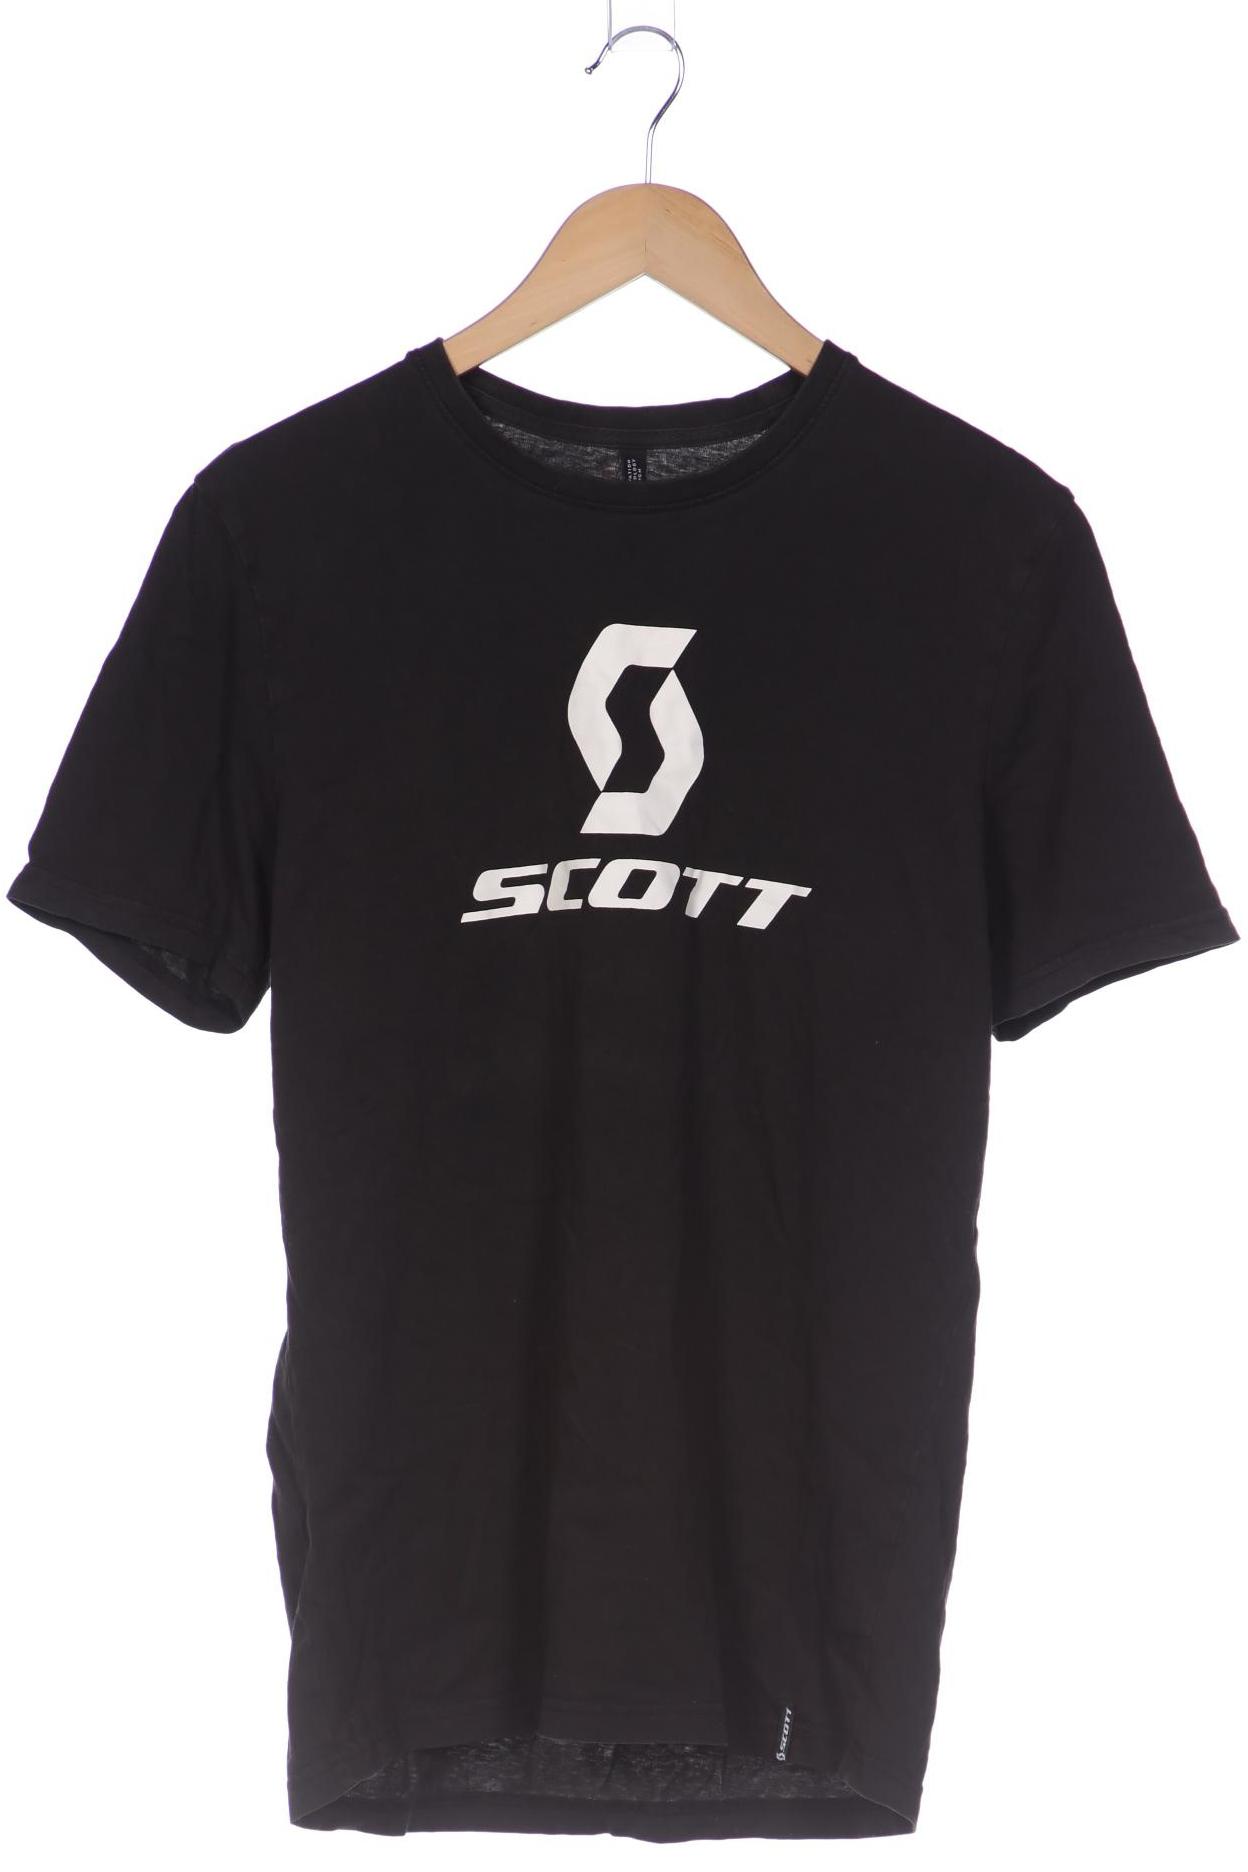 Scott Herren T-Shirt, schwarz, Gr. 48 von Scott